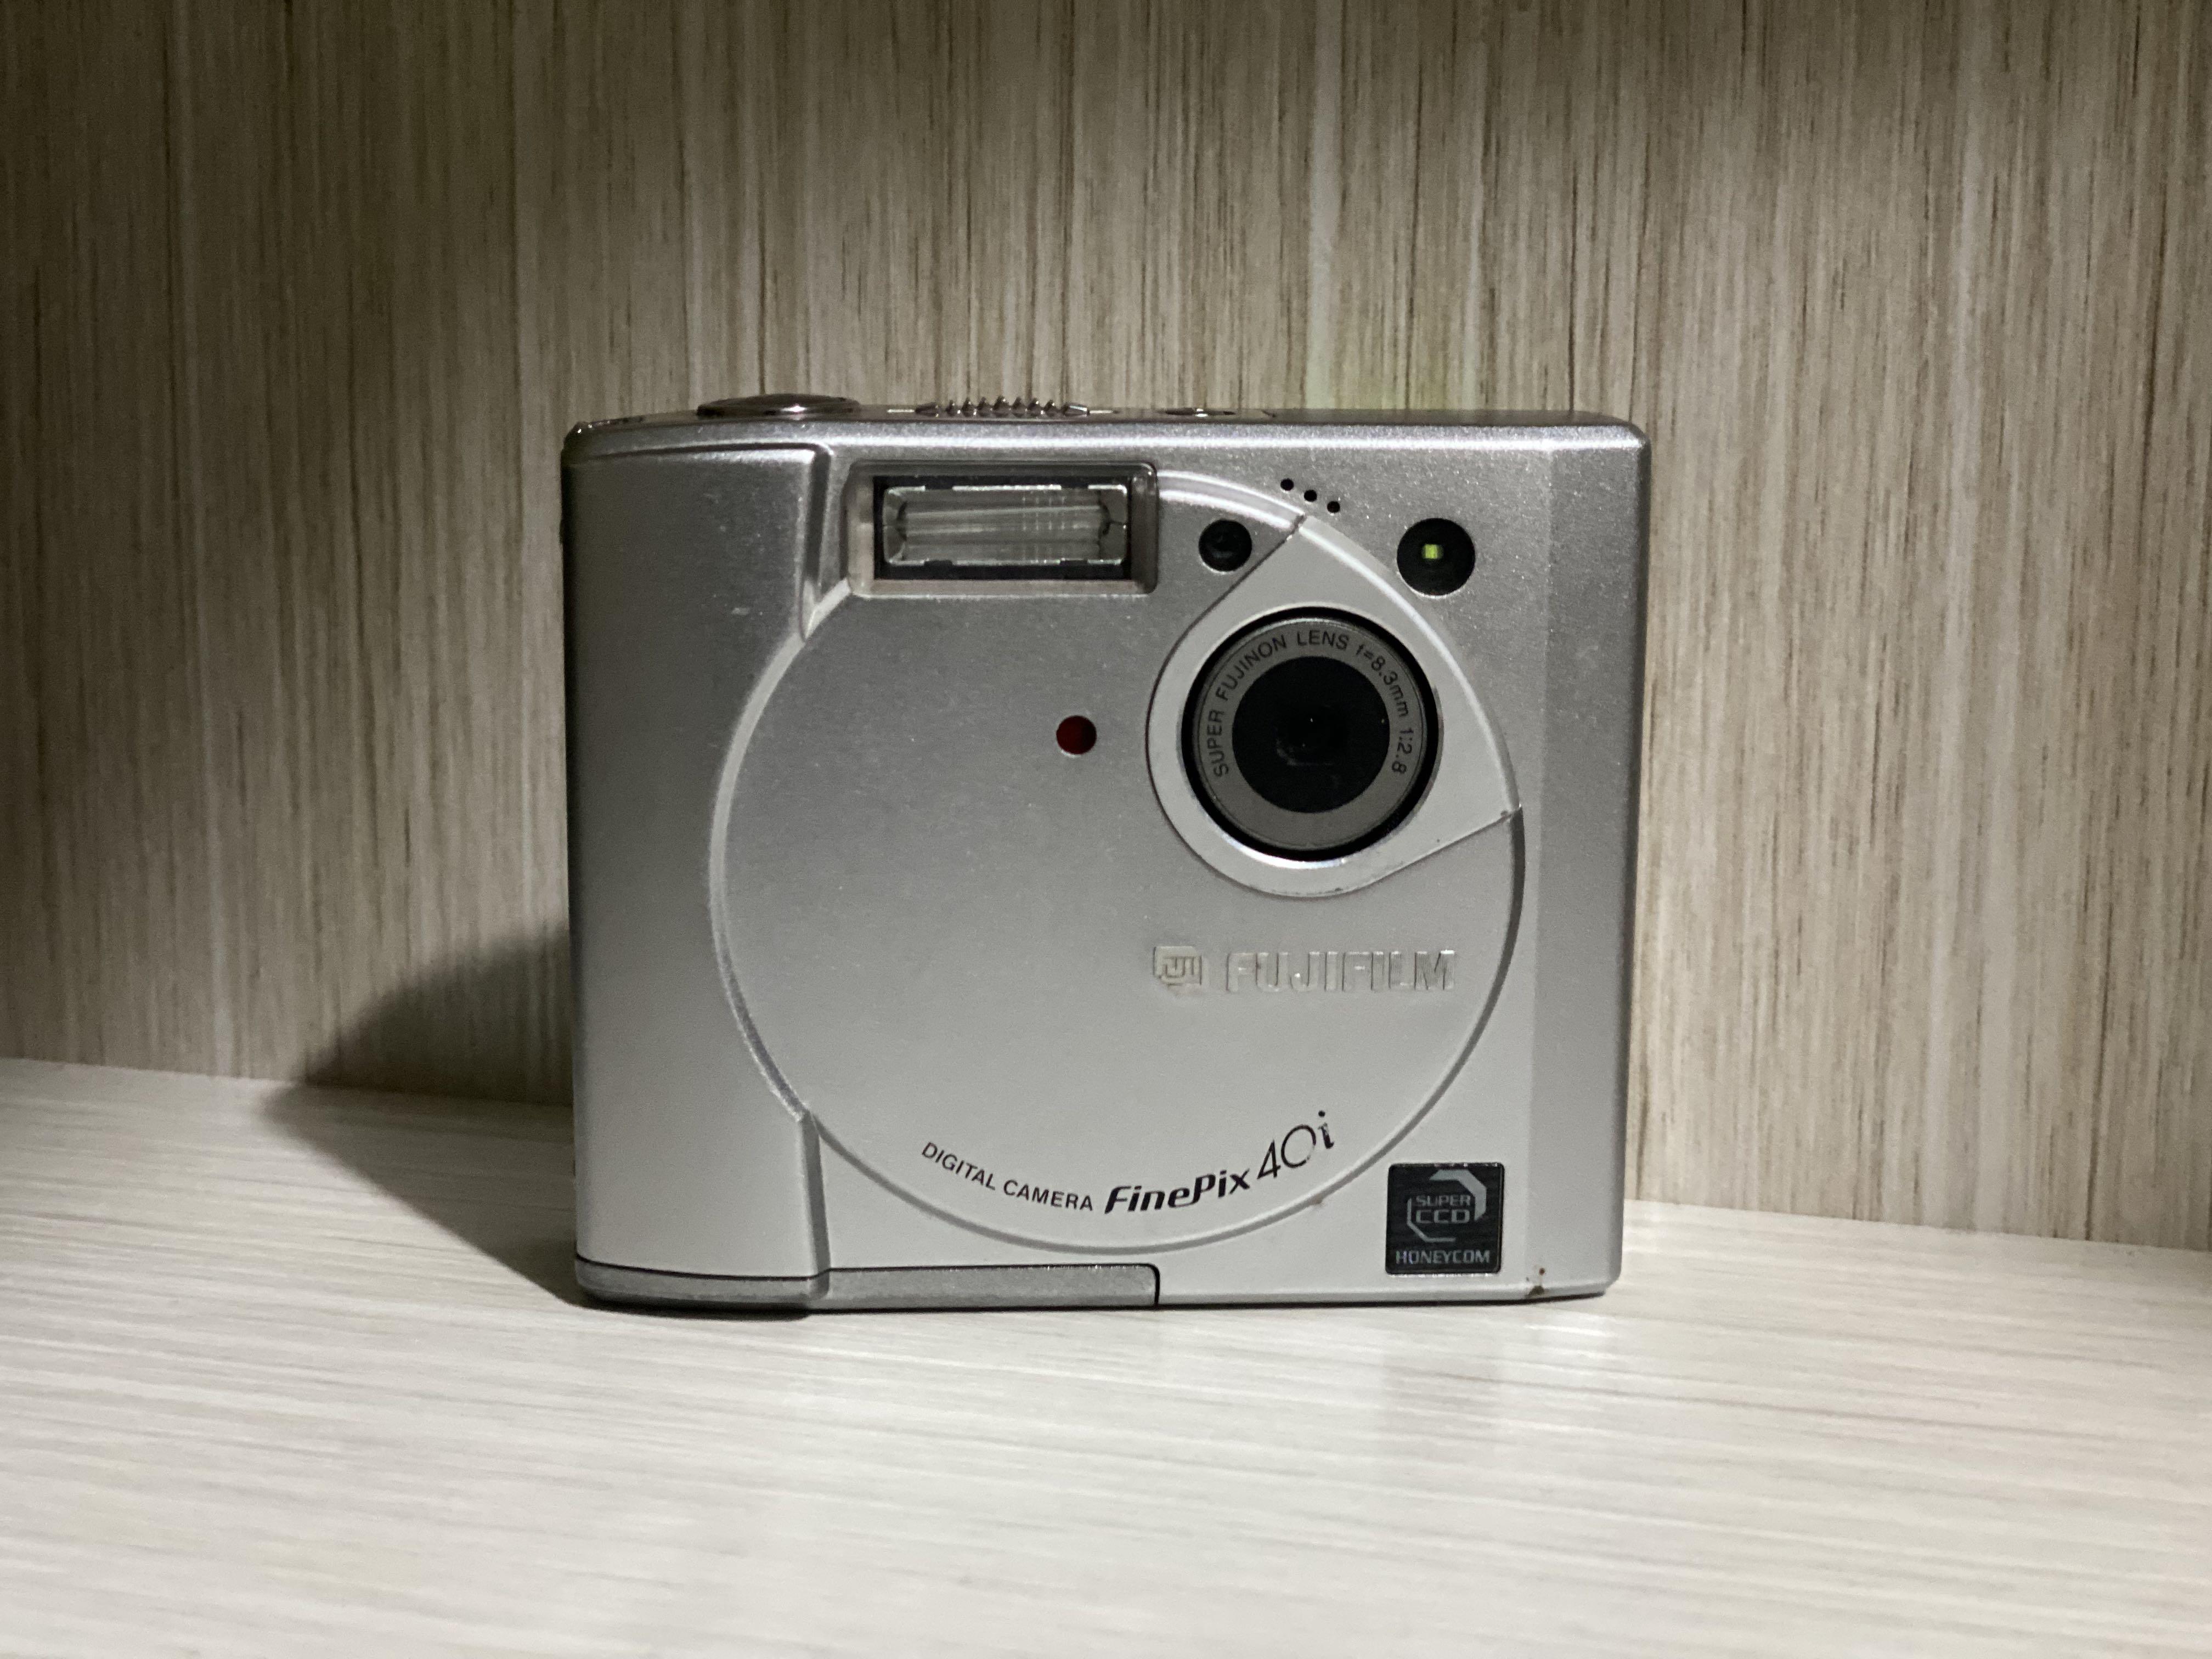 Fujifilm finepix 40i 懷舊相機ccd相機digital camera, 攝影器材, 相機 